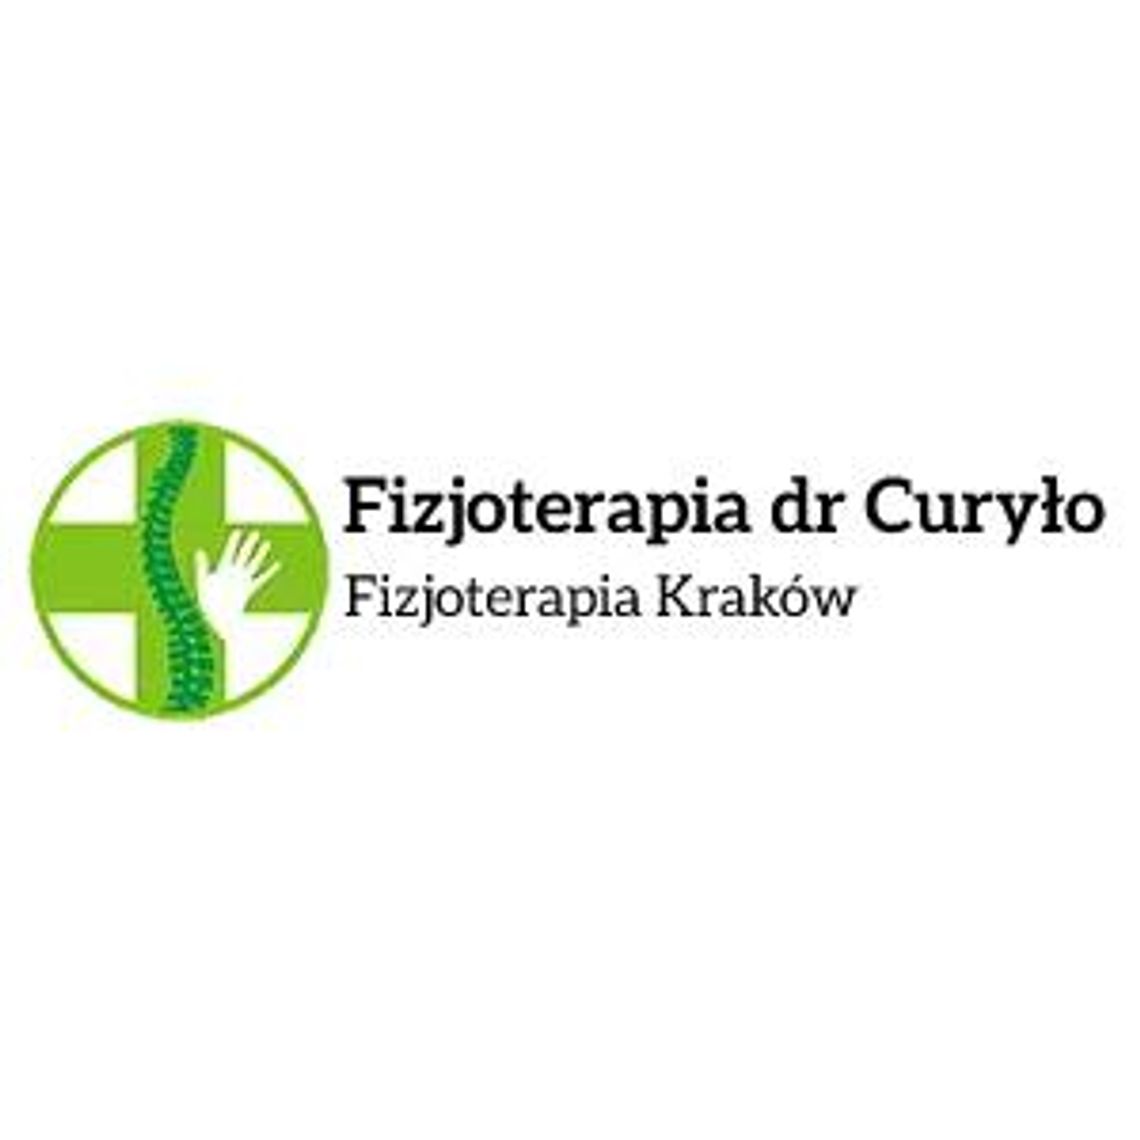 Specjalistyczna fizjoterapia - Fizjoterapia dr Curyło